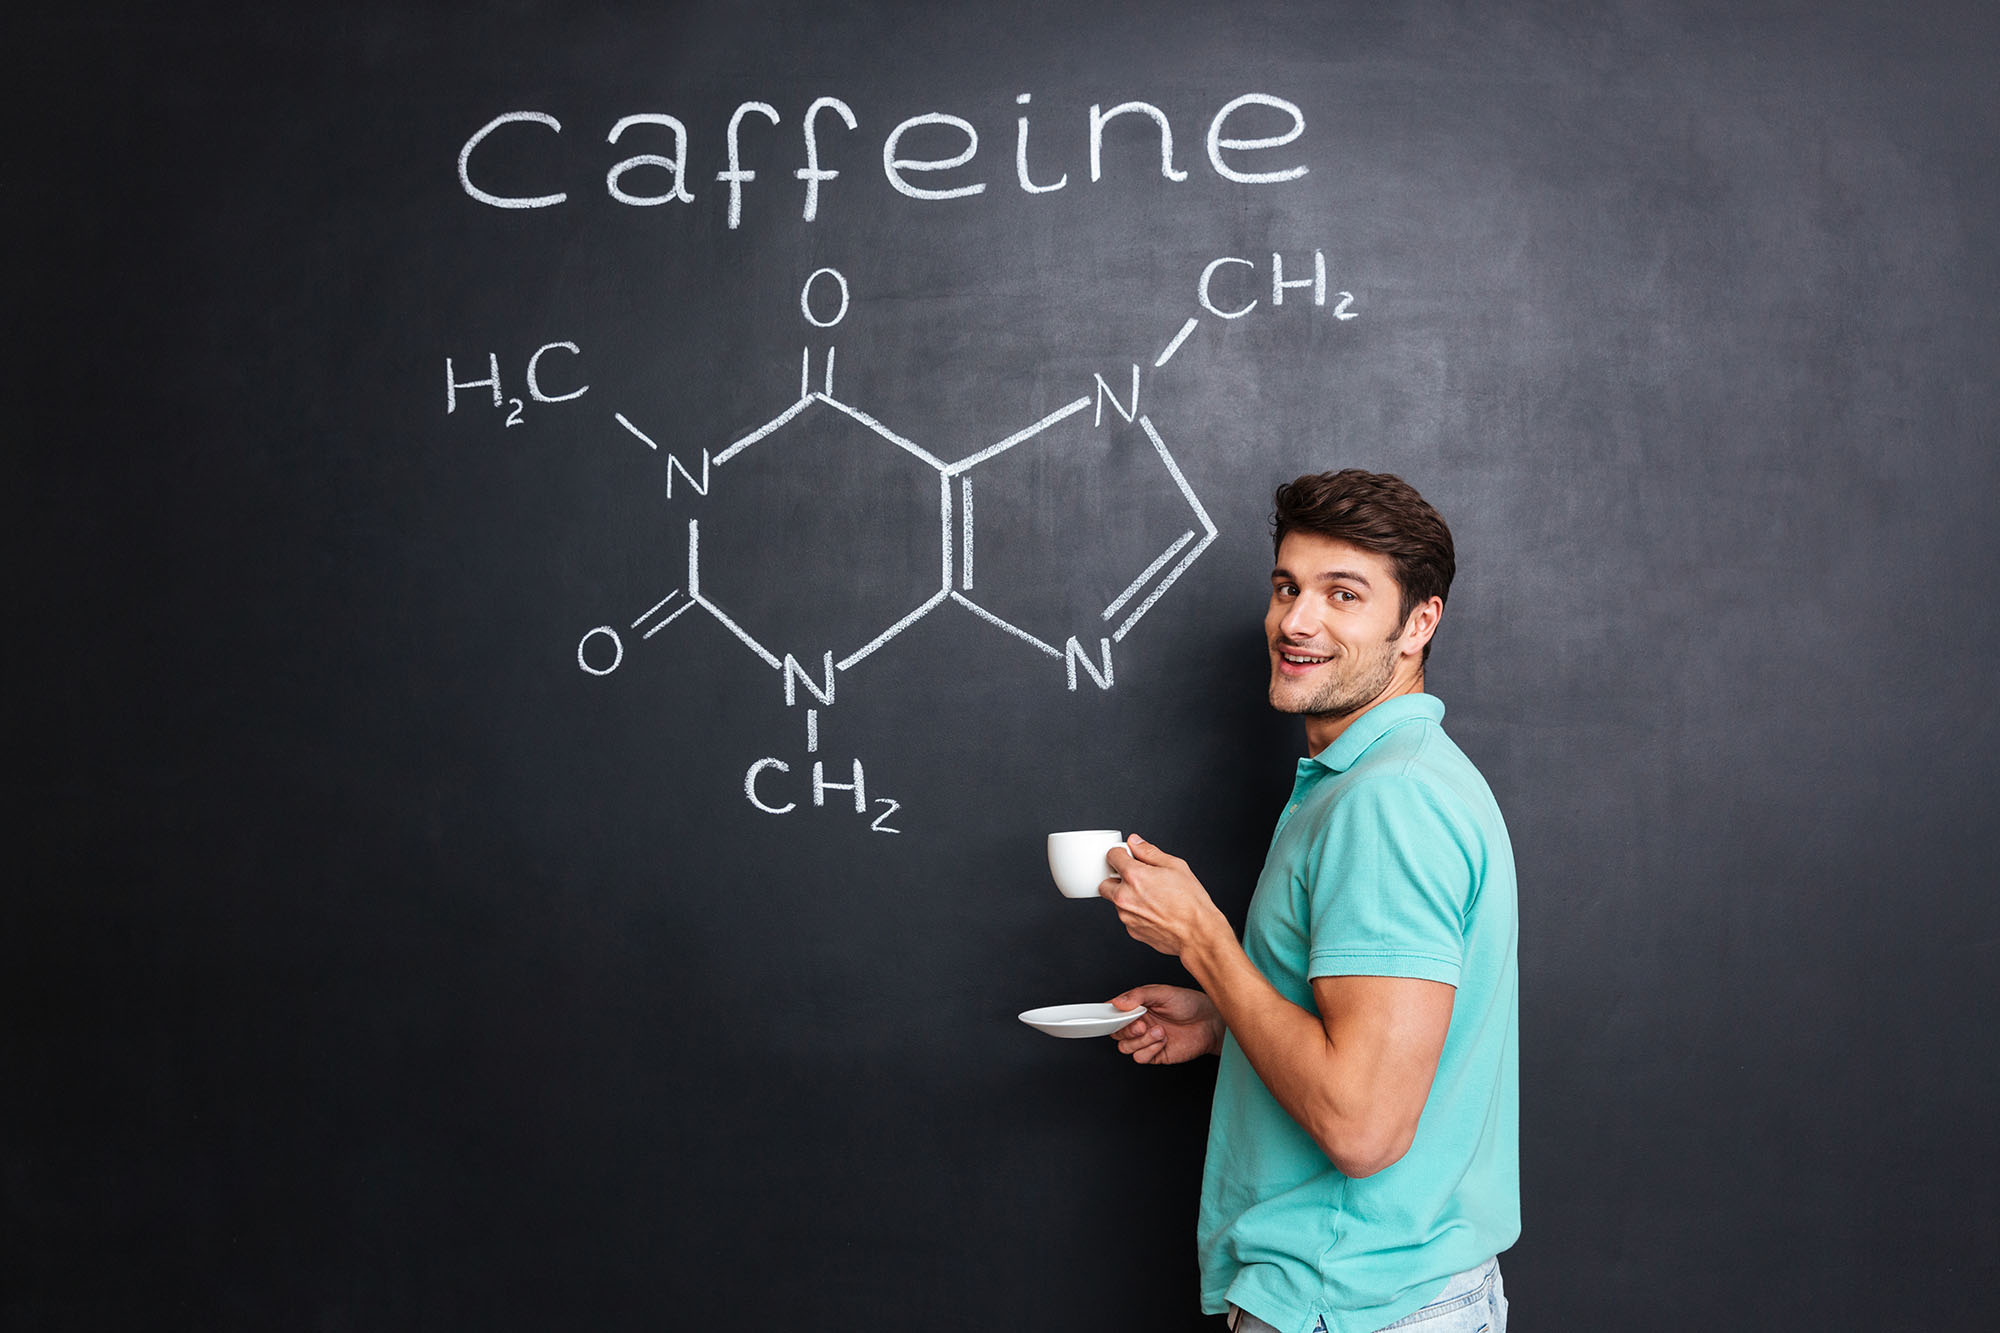 SAREBBE NECESSARIO SOSPENDERE LA CAFFEINA PER ALCUNI GIORNI PER UNA MIGLIORE PERFORMANCE?